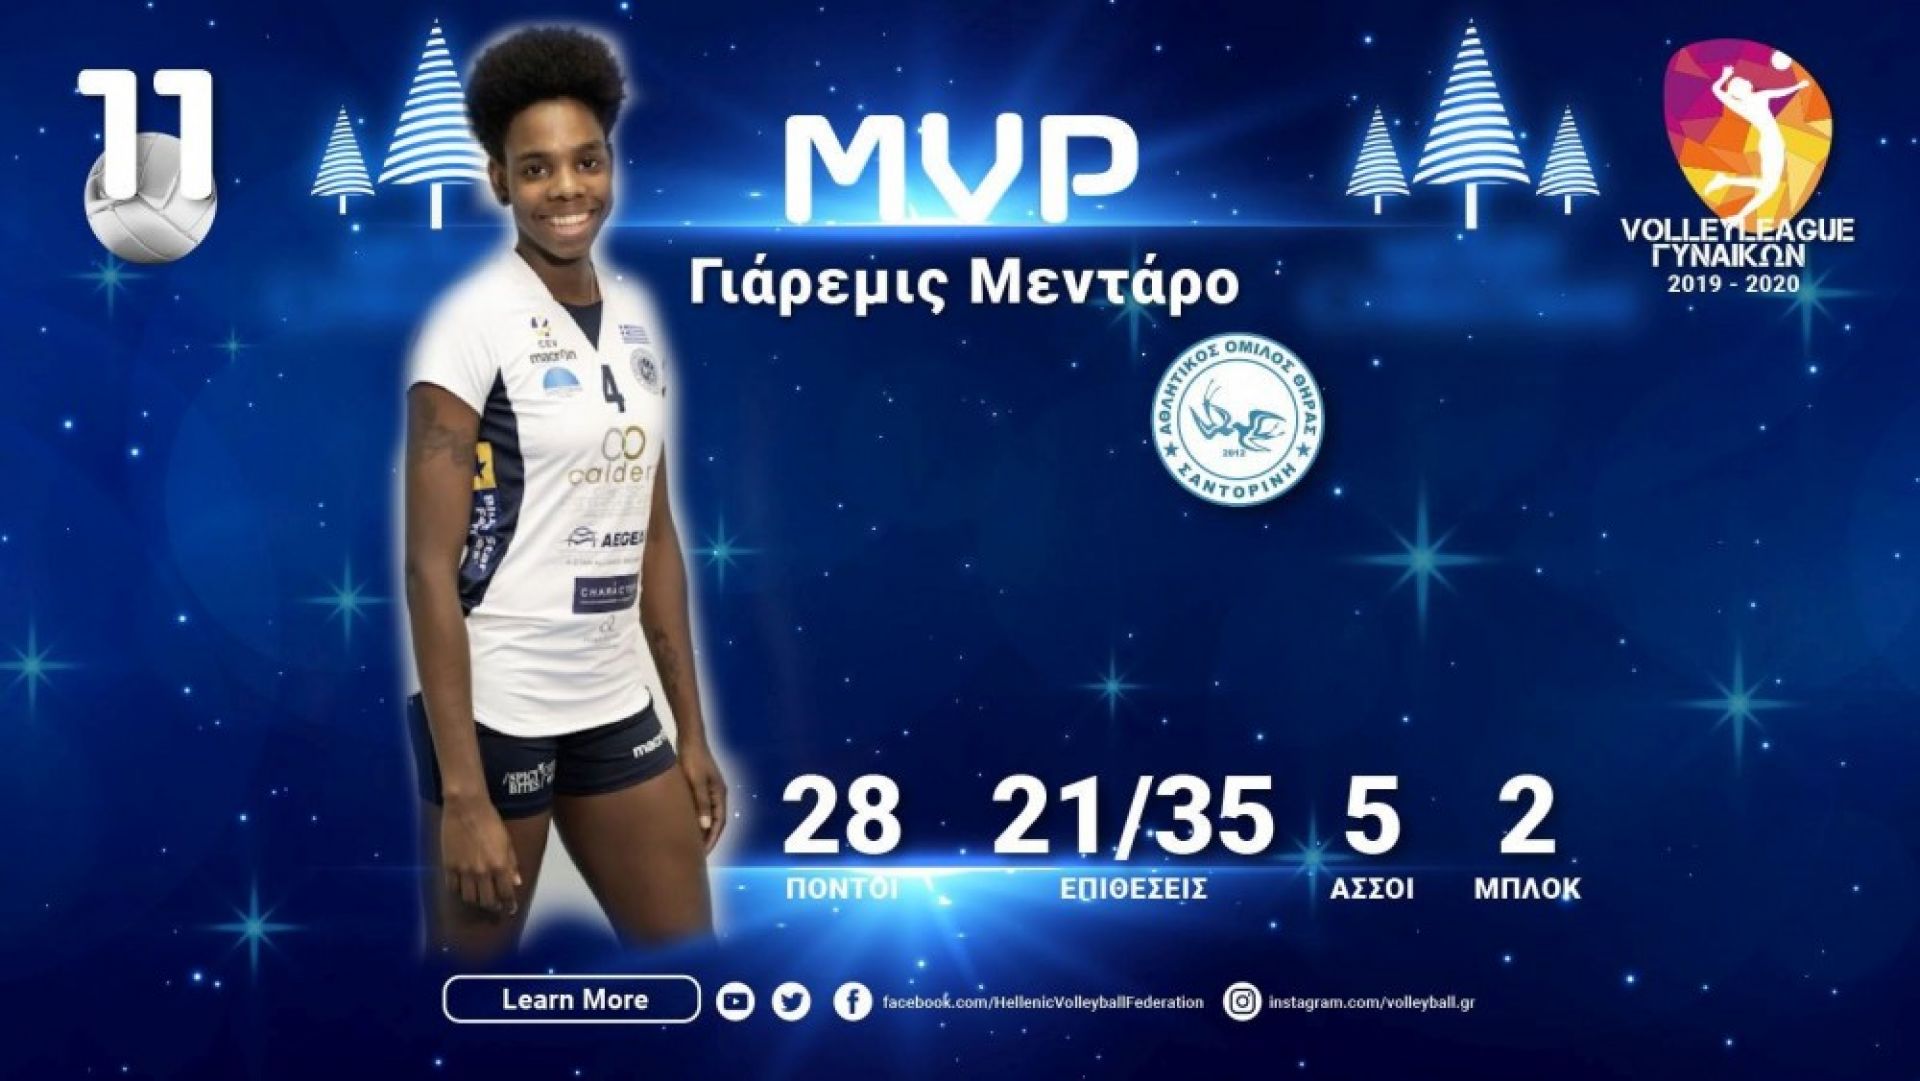 H Γιάρεμις Μεντάρο MVP της 11ης αγωνιστικής